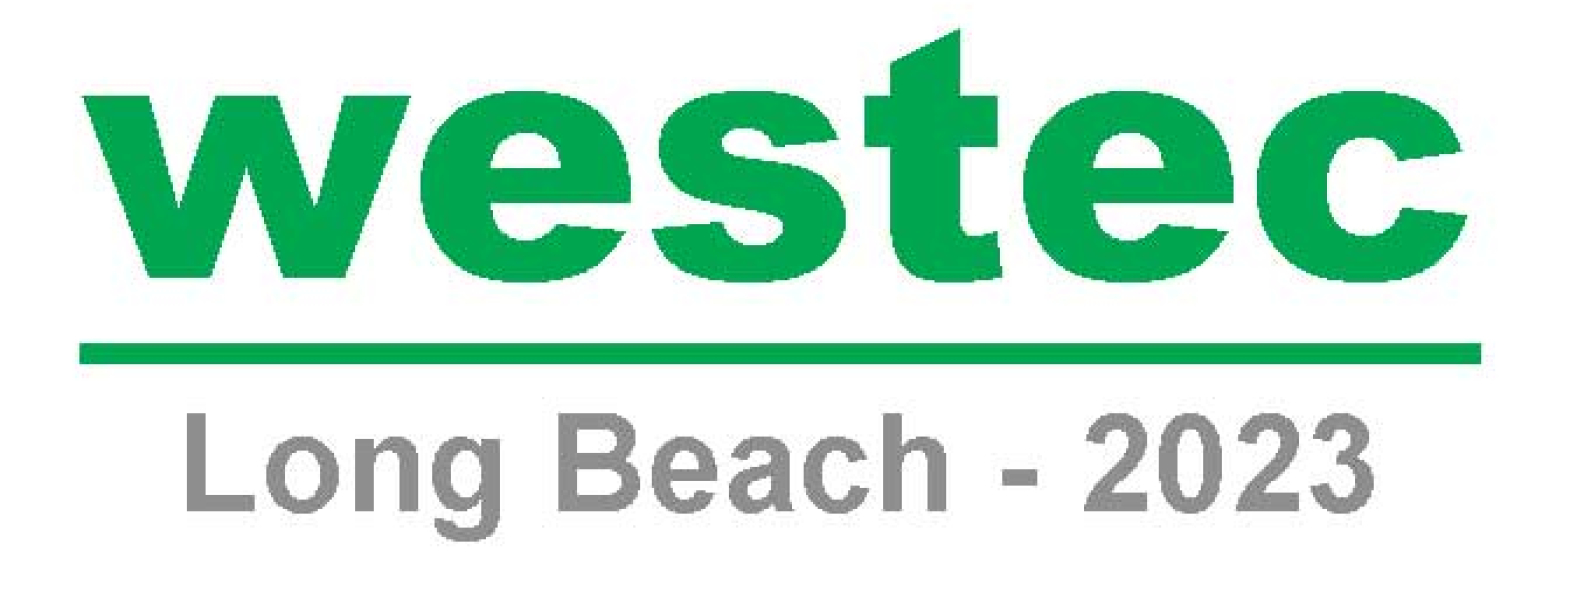 Custom Trade Show Exhibit for WESTEC Long Beach 2023